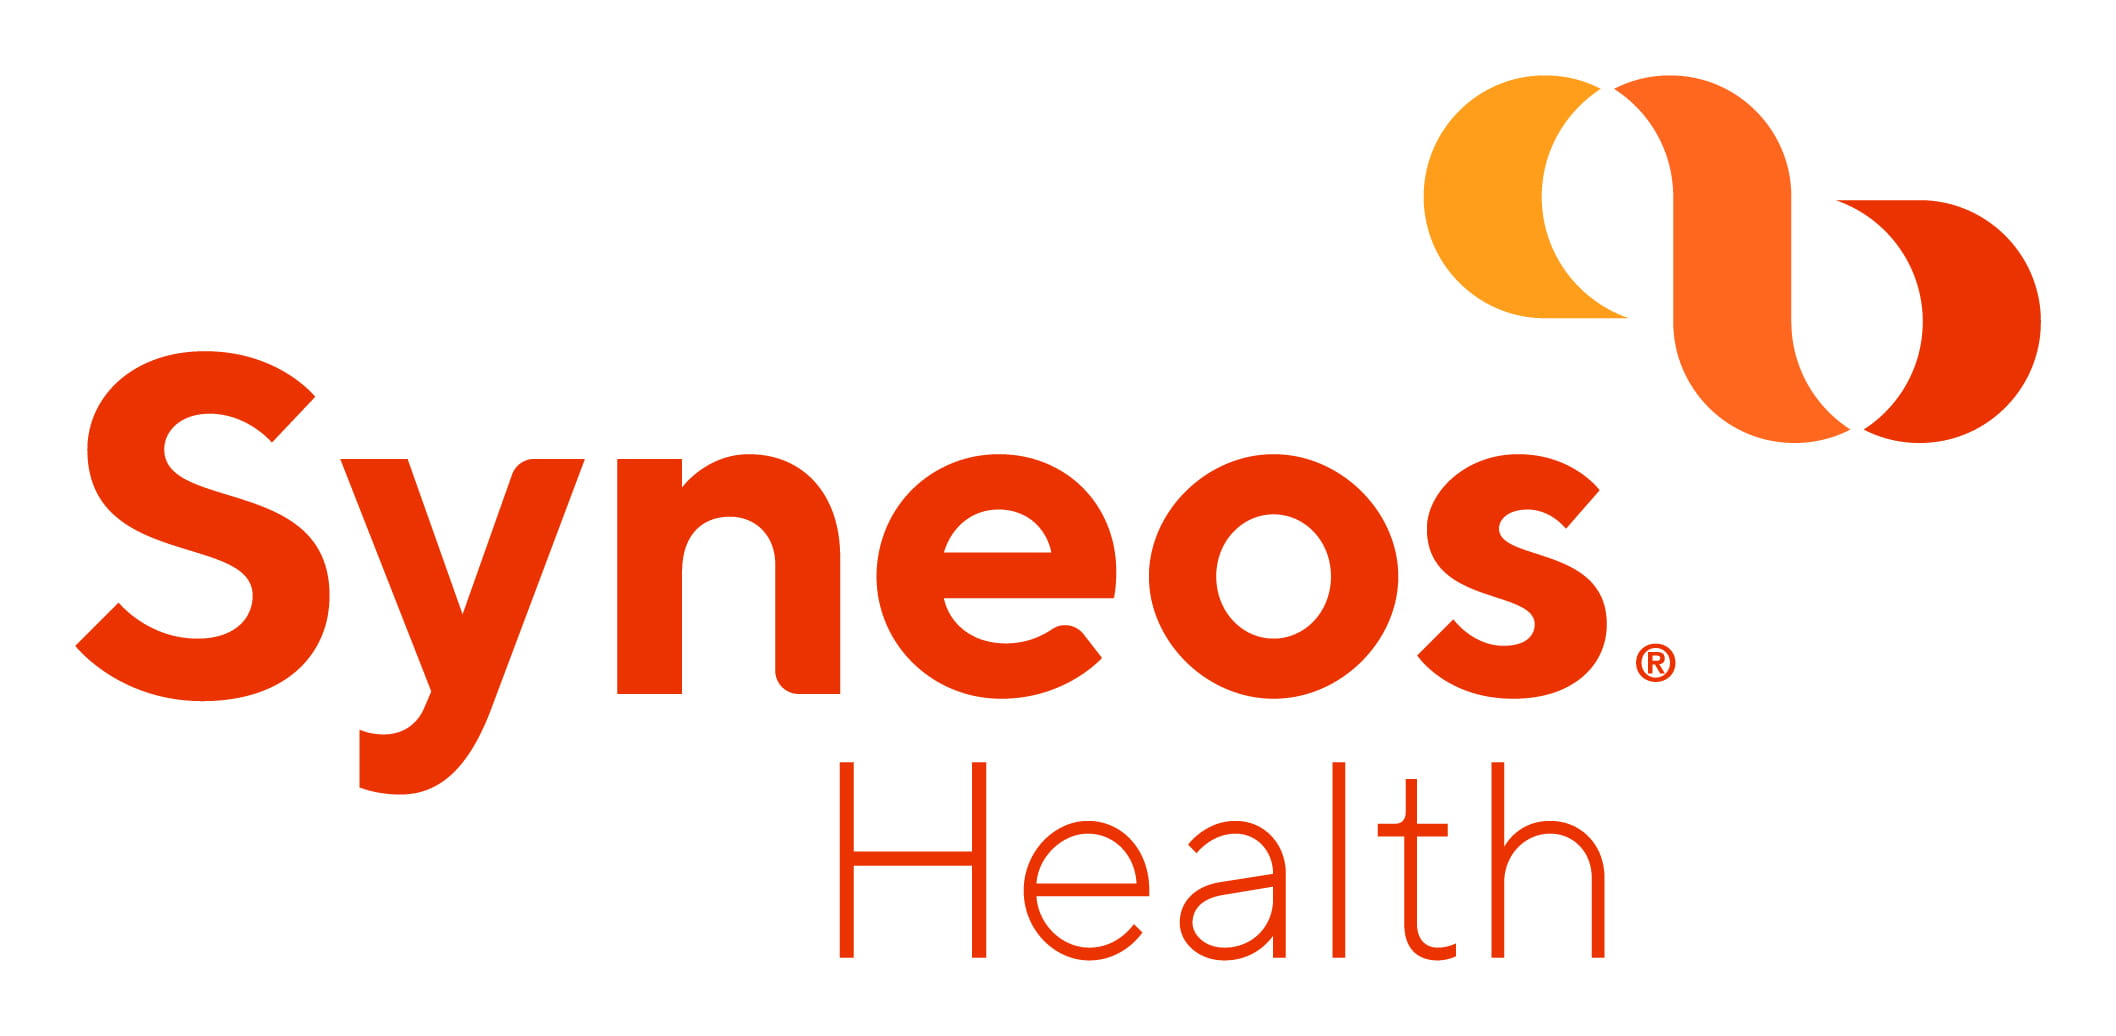 Company logo of Syneos Health.